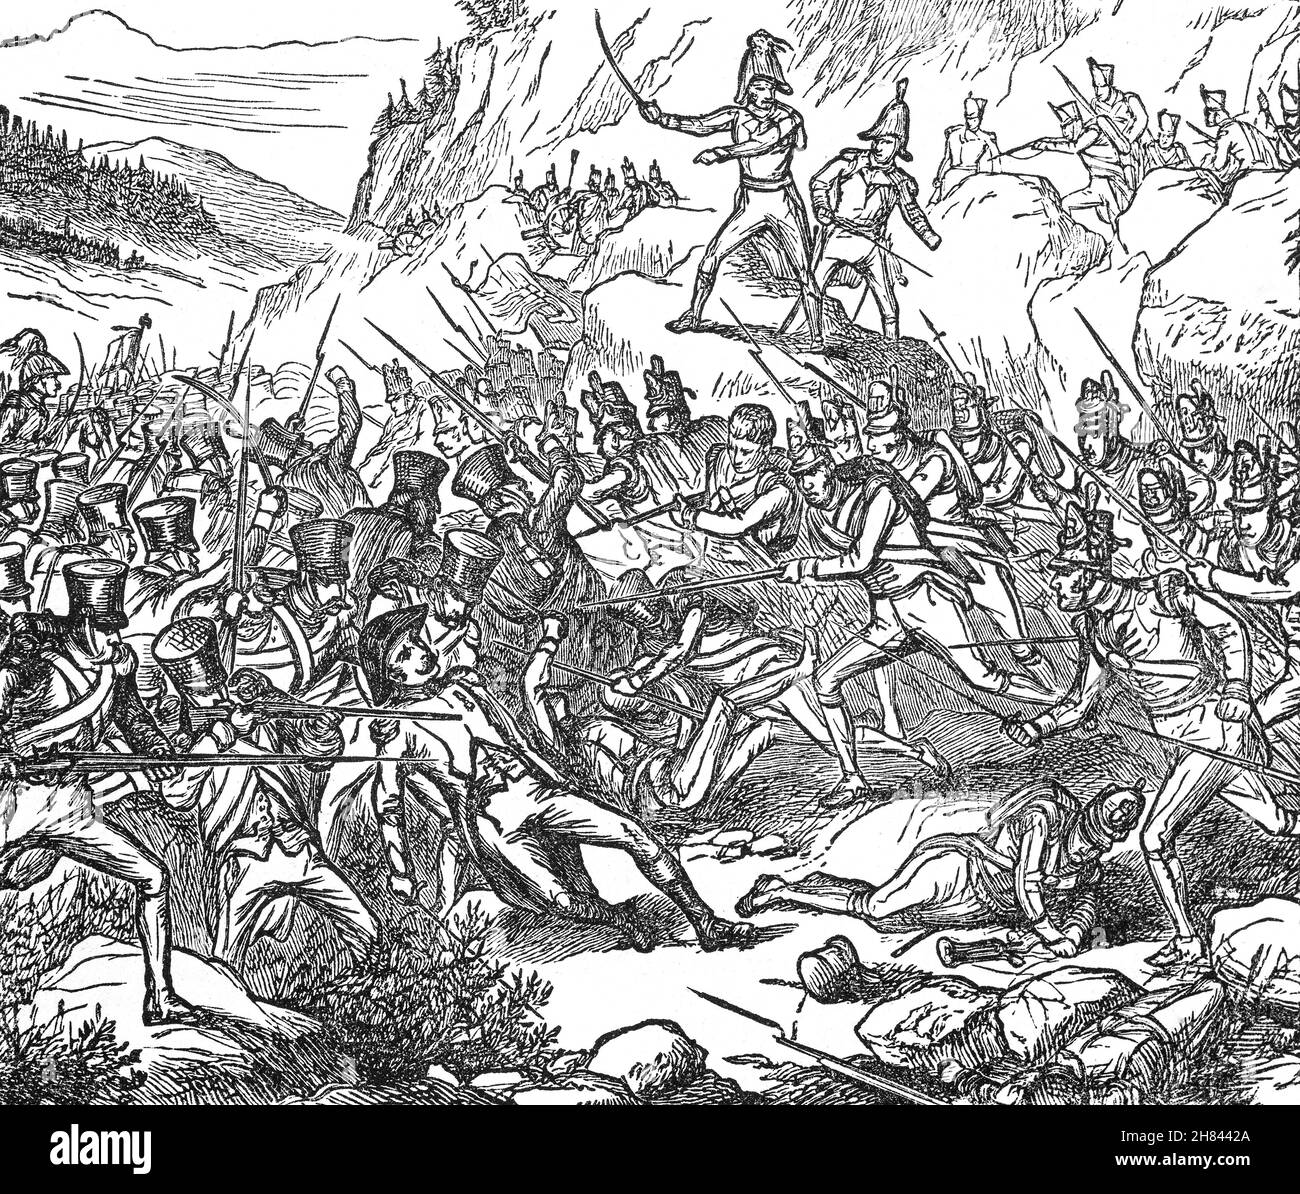 Une illustration de la bataille de Buçaco, ou Bussaco, à la fin du XIXe siècle, a combattu le 27 septembre 1810 pendant la guerre péninsulaire dans la chaîne de montagnes portugaise de Serra do Buçaco, entraînant la défaite des forces françaises par l'armée anglo-portugaise de Lord Wellington Banque D'Images